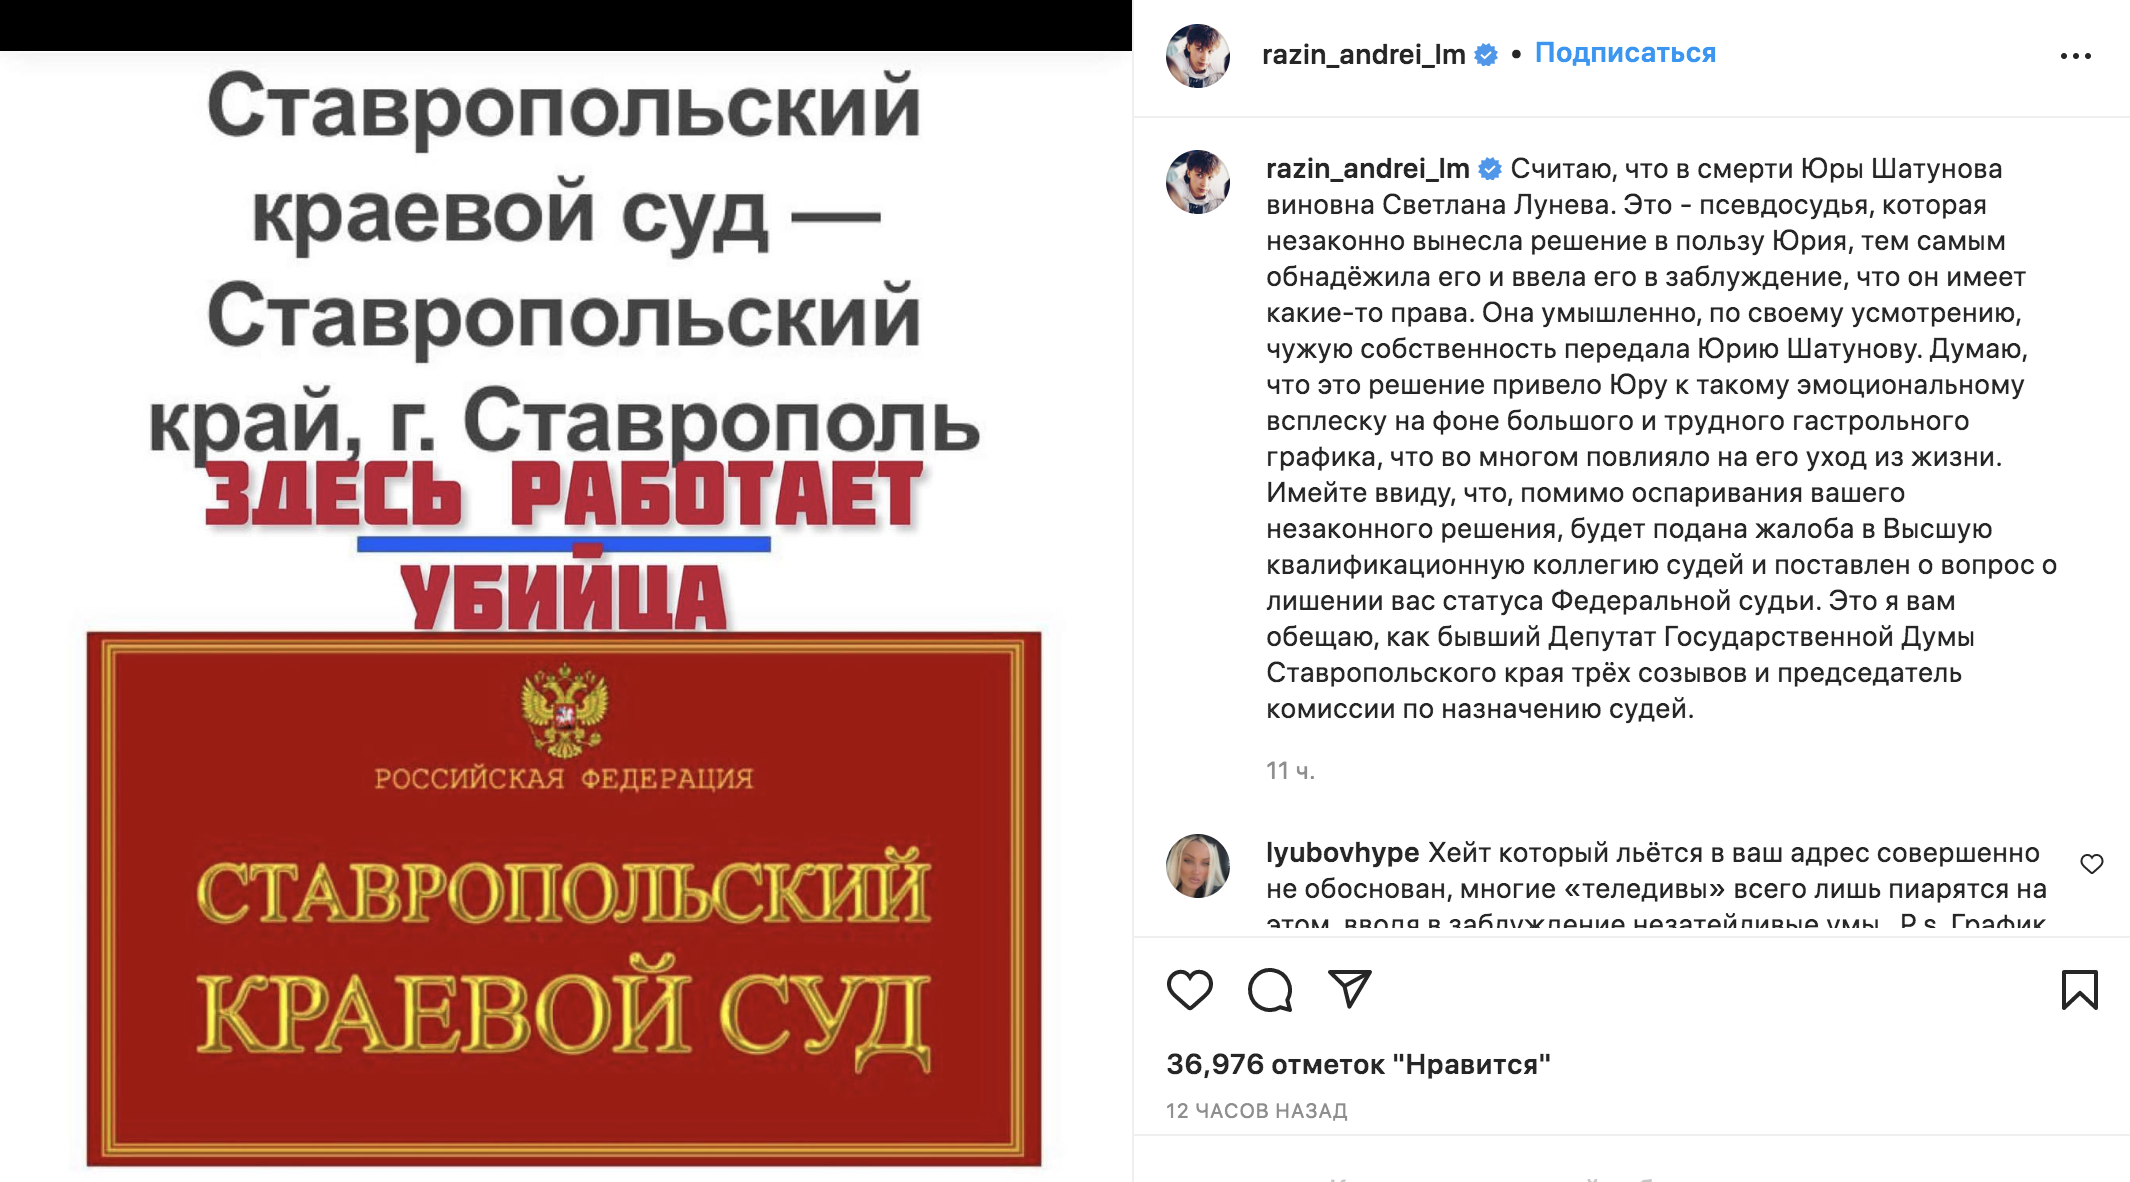 Скриншот © Instagram (запрещён на территории Российской Федерации) / razin_andrei_lm